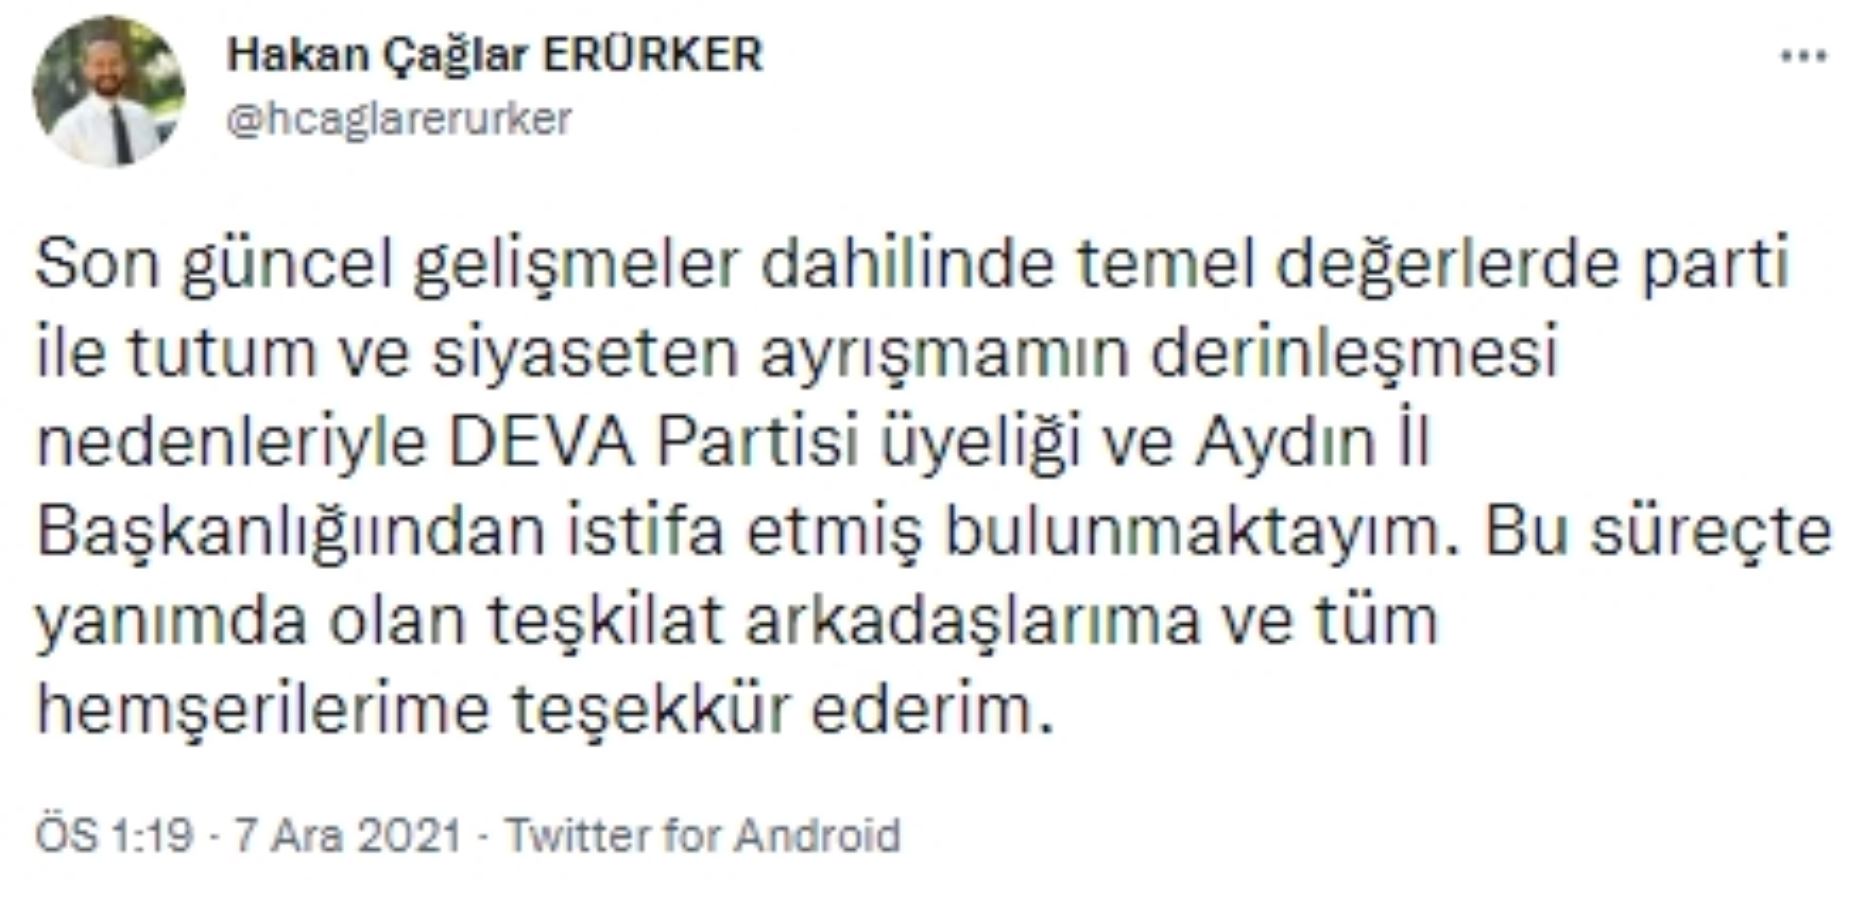 DEVA Partisi Aydın İl Başkanı Erürker, partiden istifa etti